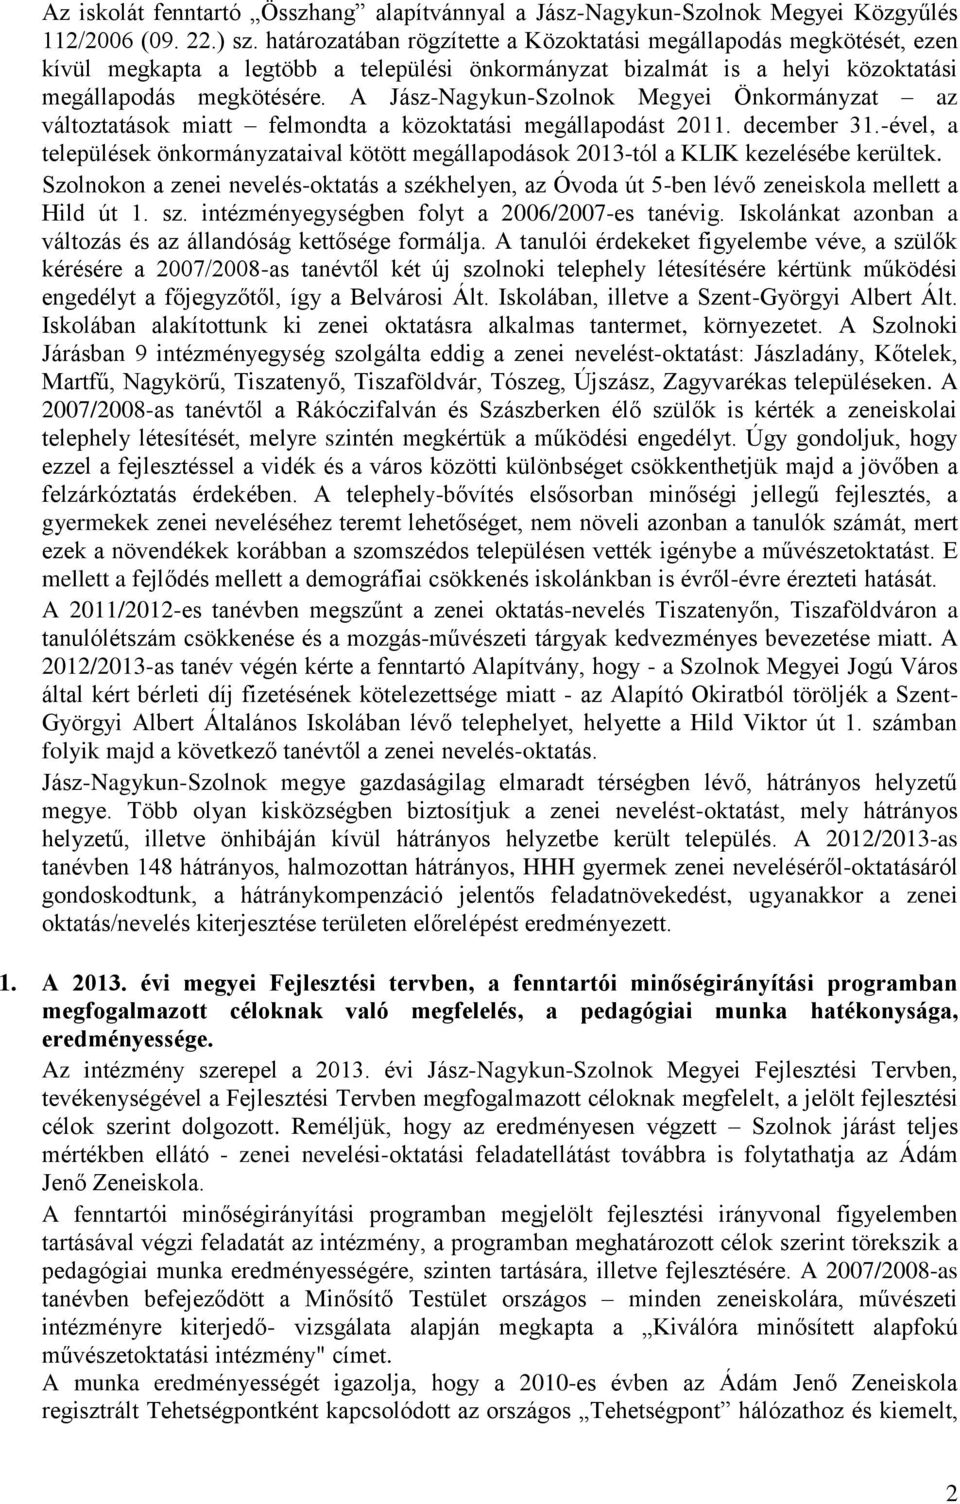 A Jász-Nagykun-Szolnok Megyei Önkormányzat az változtatások miatt felmondta a közoktatási megállapodást 2011. december 31.